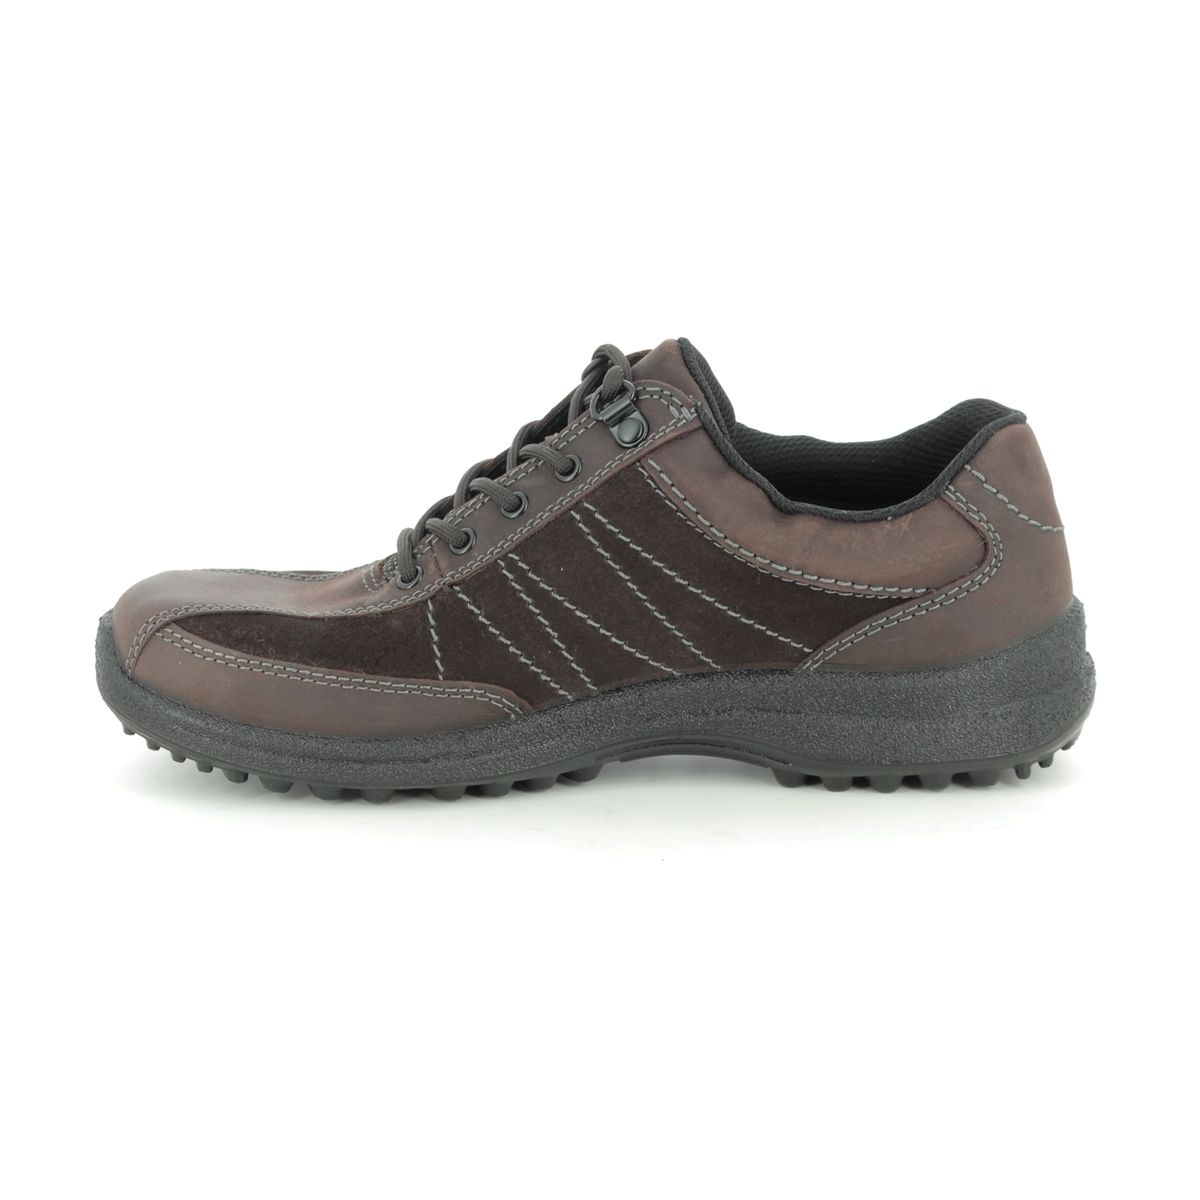 Hotter Mist Gtx 95 E 9509-20 Brown nubuck Walking Shoes